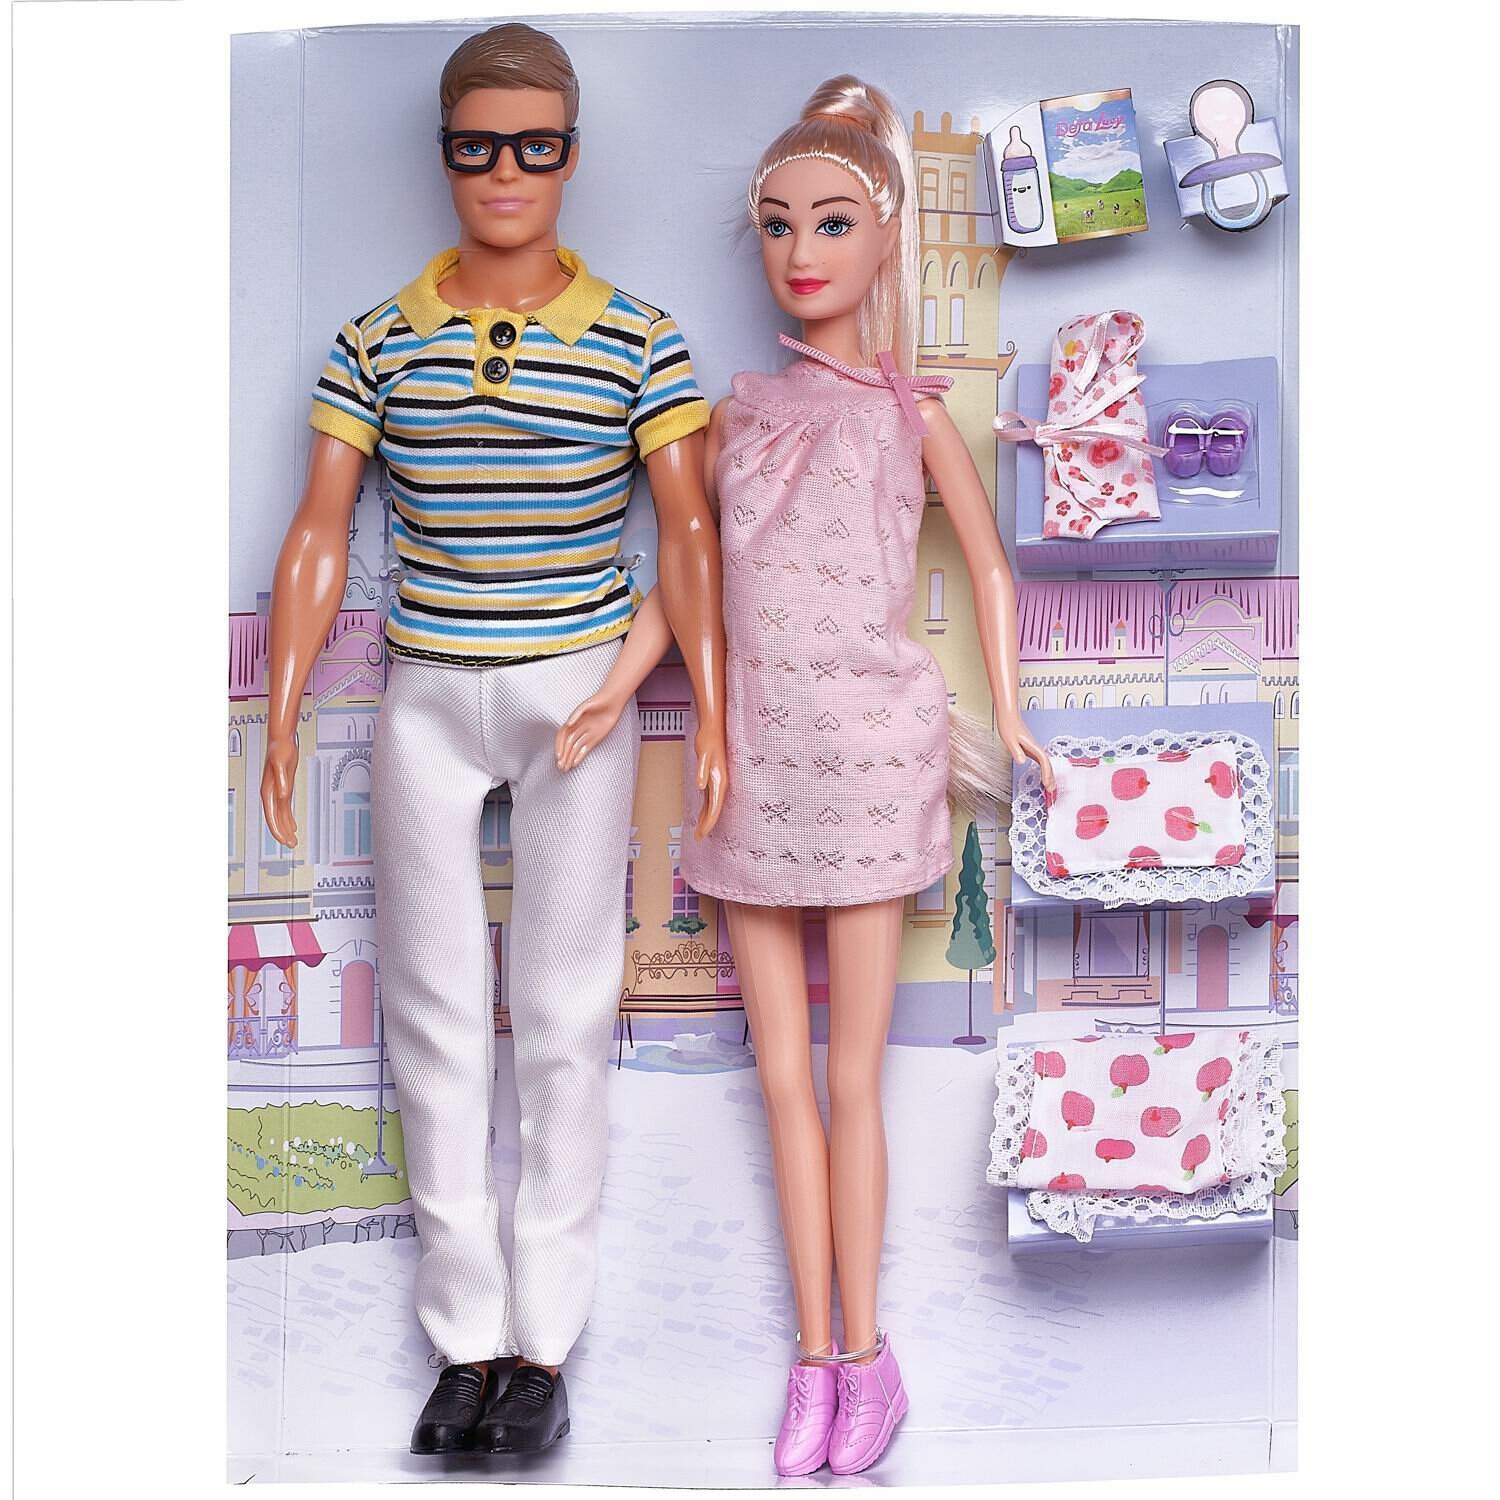 Кукла Defa Lucy "В ожидании чуда: муж и беременная жена", в наборе с игровыми предметами, 29 и 30 см 8349d